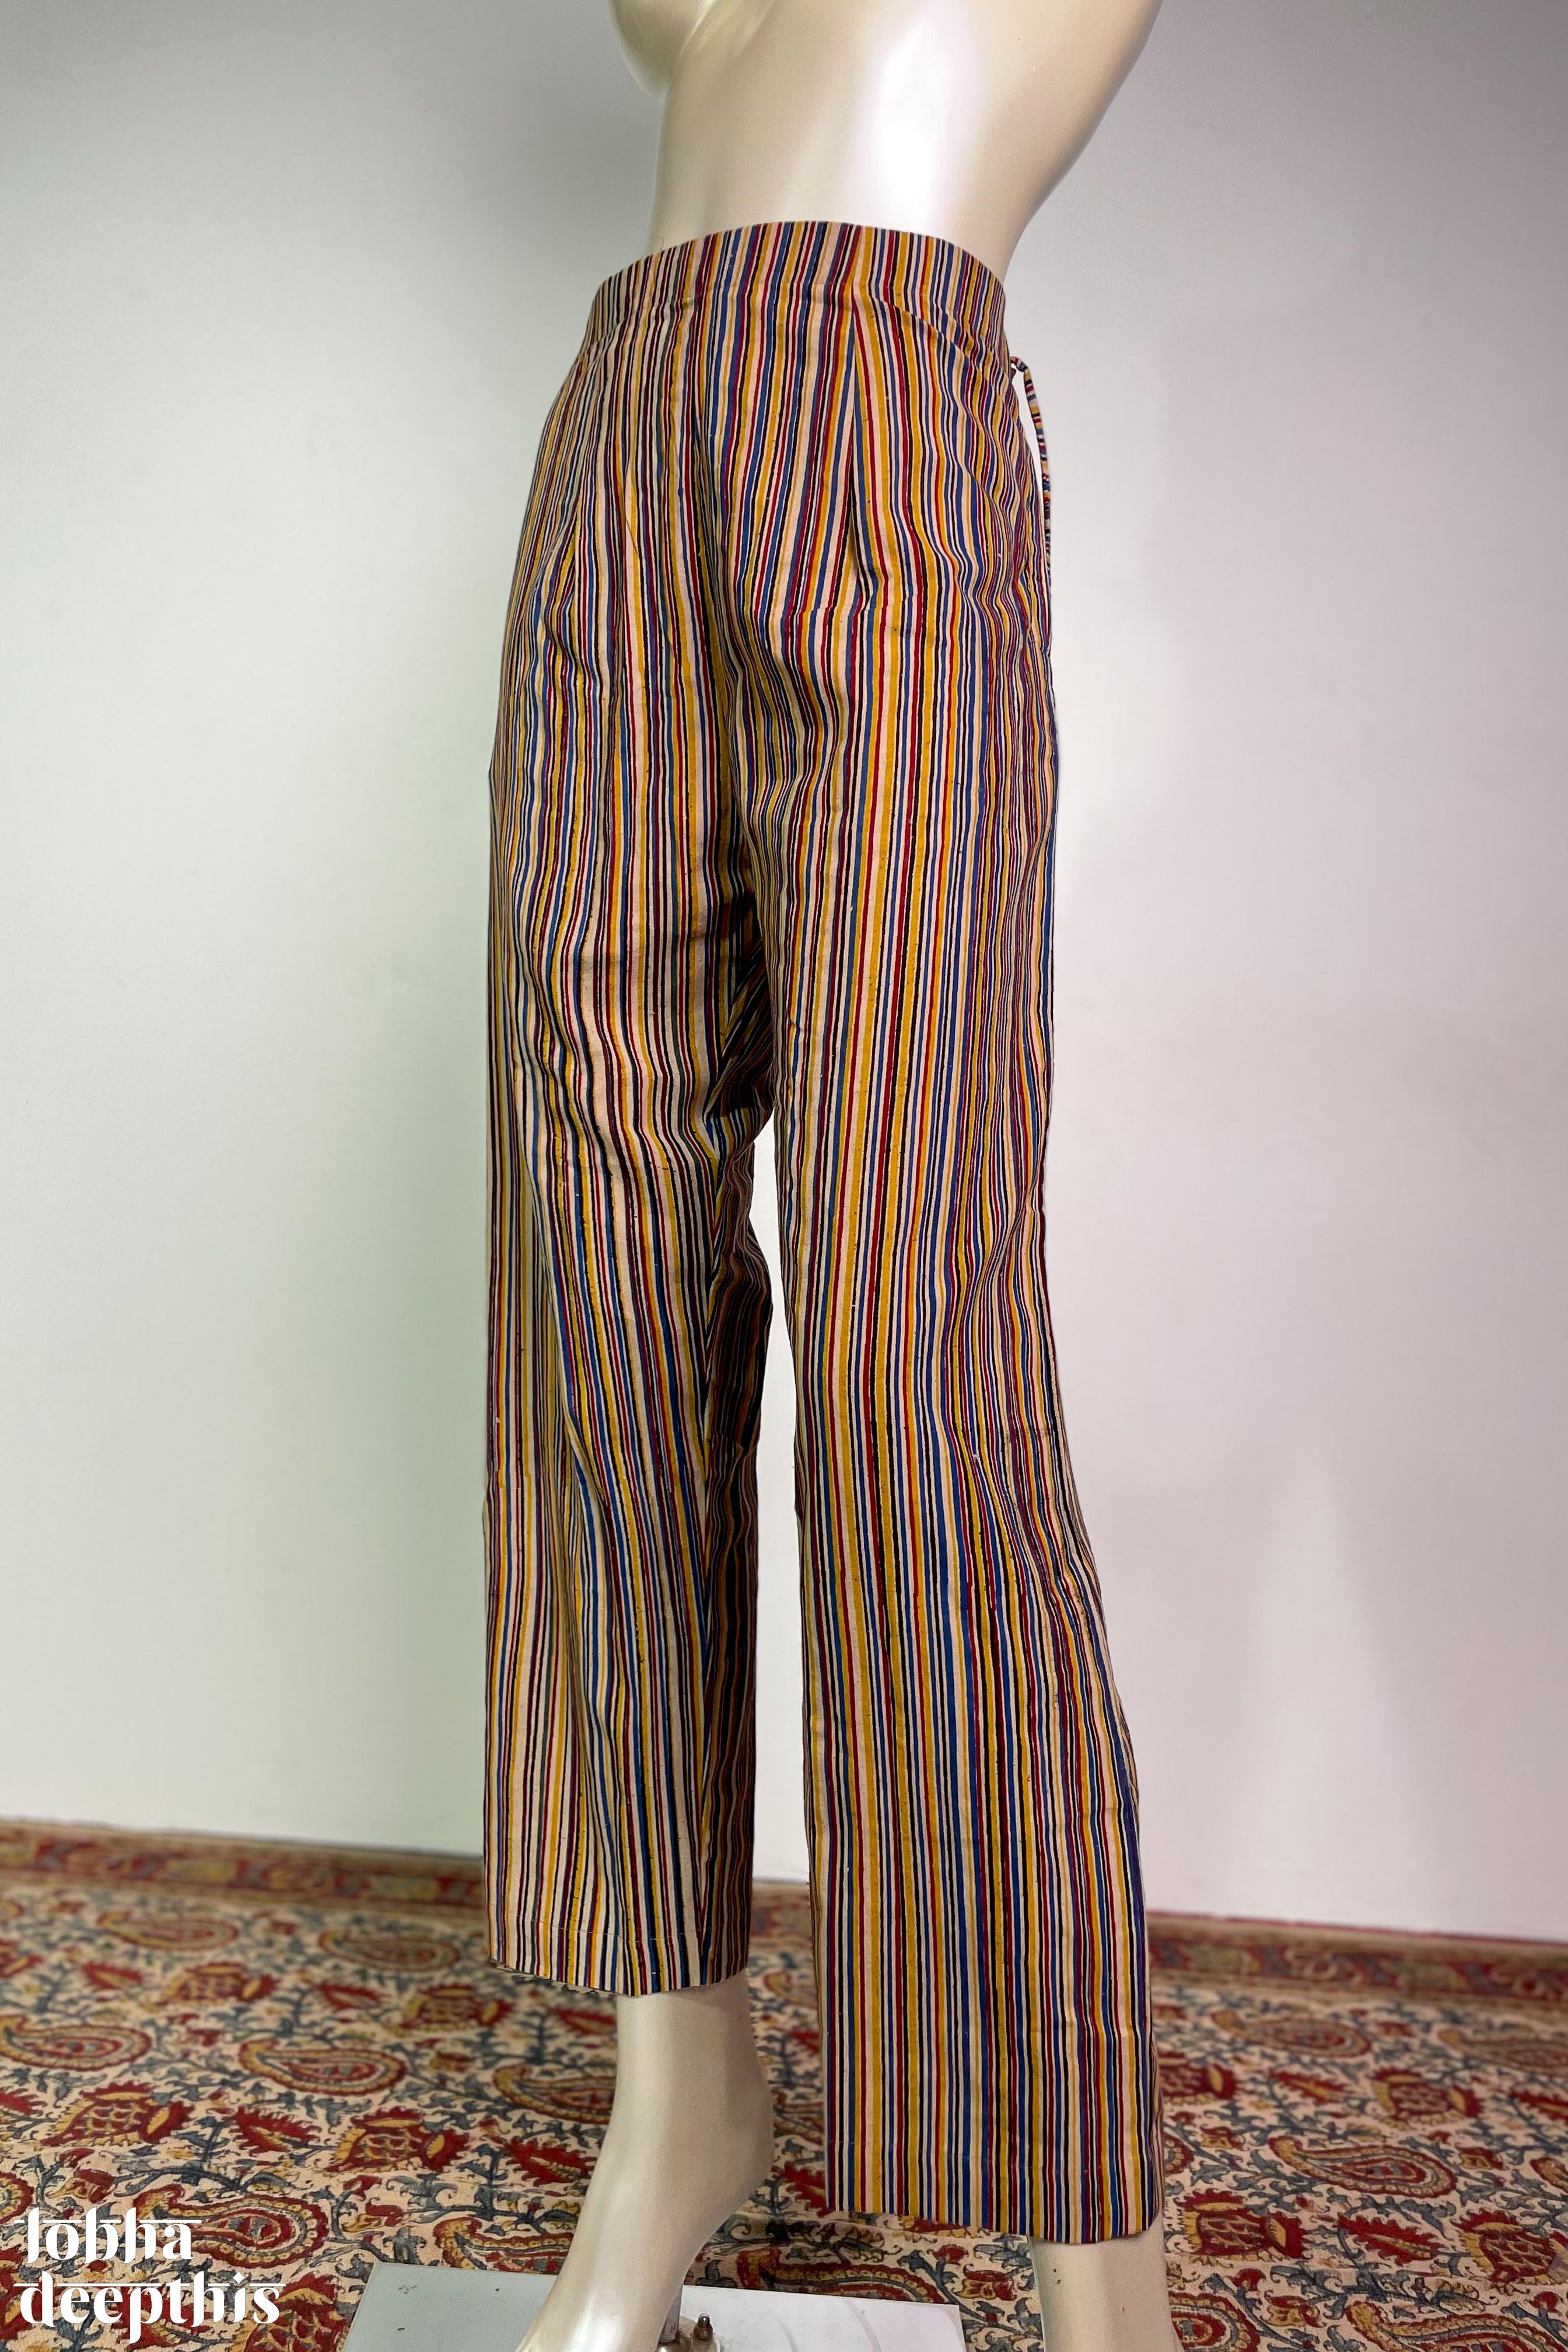 Parallel Pants Beige Size 4 Spring Fling Dress Pants Linen Cotton Blend NWT!